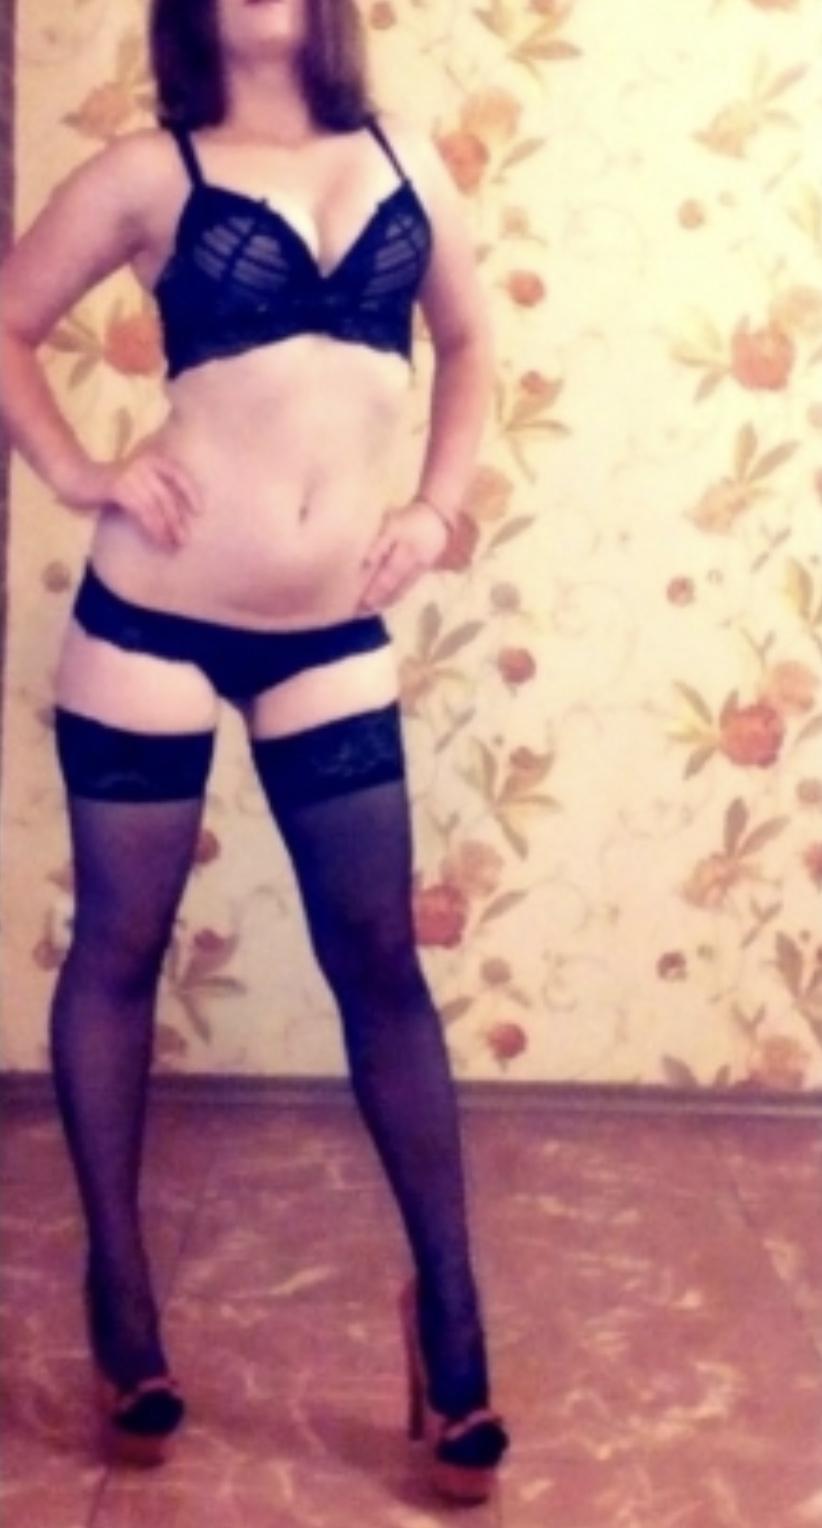 Проститутка Аня, фото 1, тел: 0950790034. В центре города - Киев